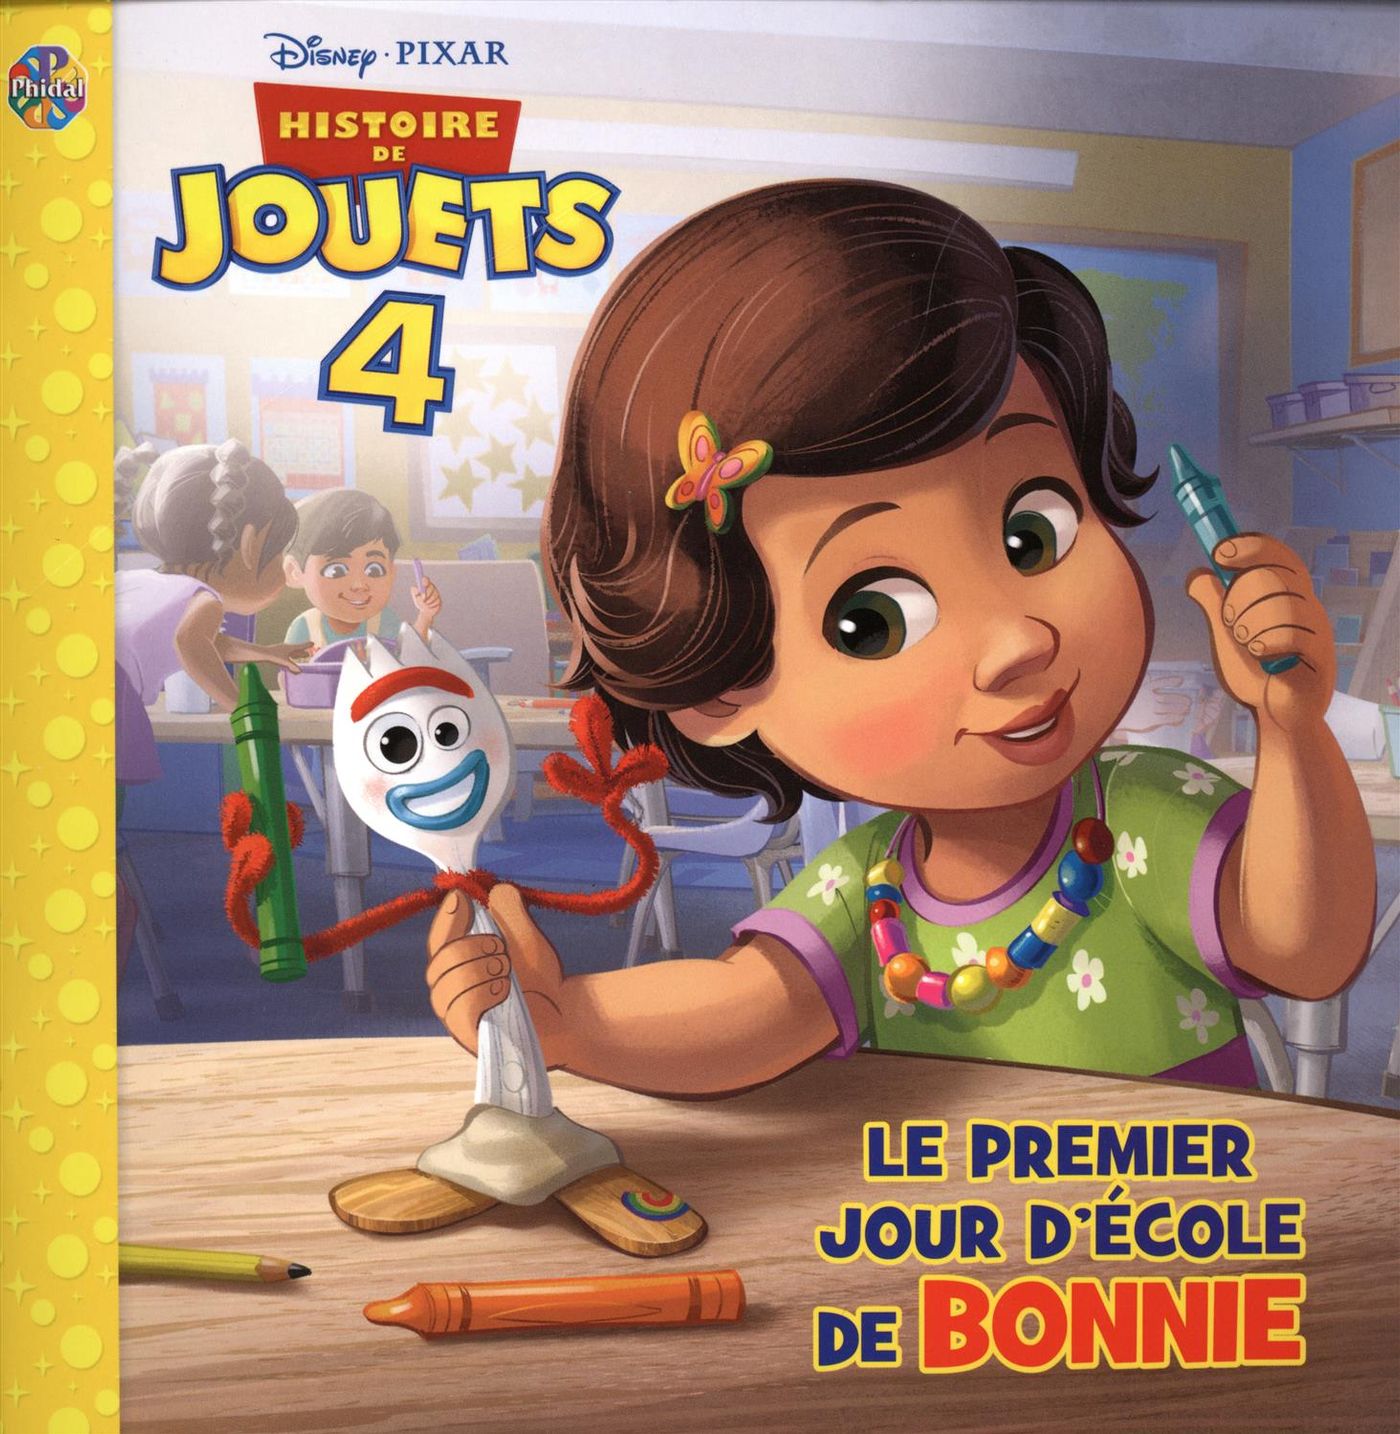 Histoire de jouets 4 : Le premier jour d'école de Bonnie